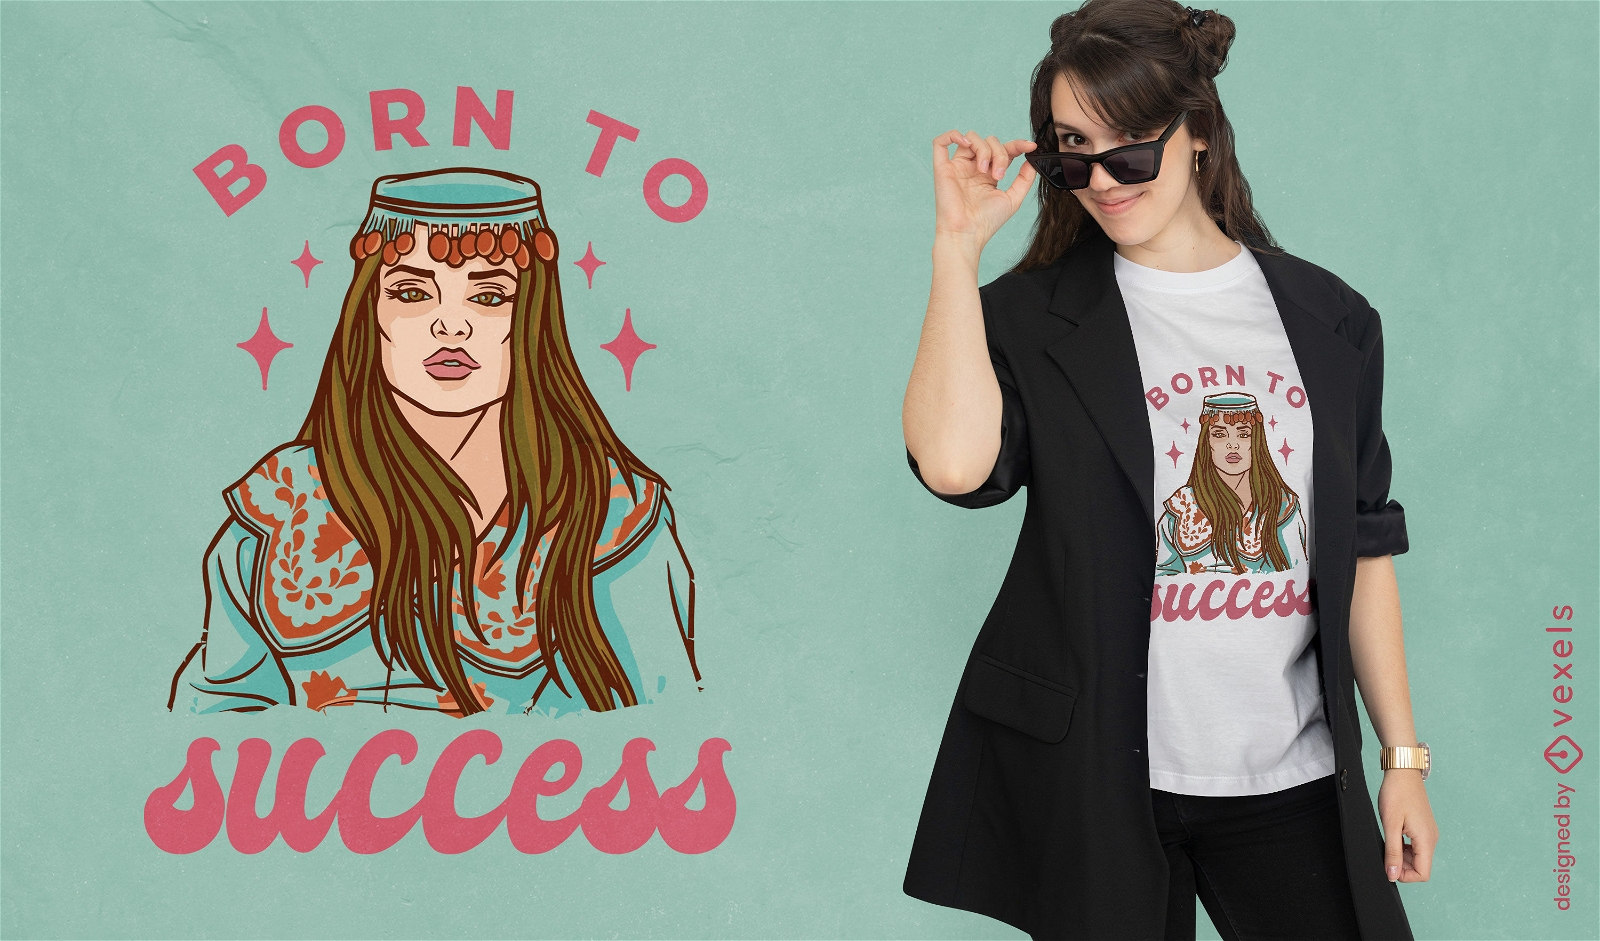 Born to success woman t-shirt design